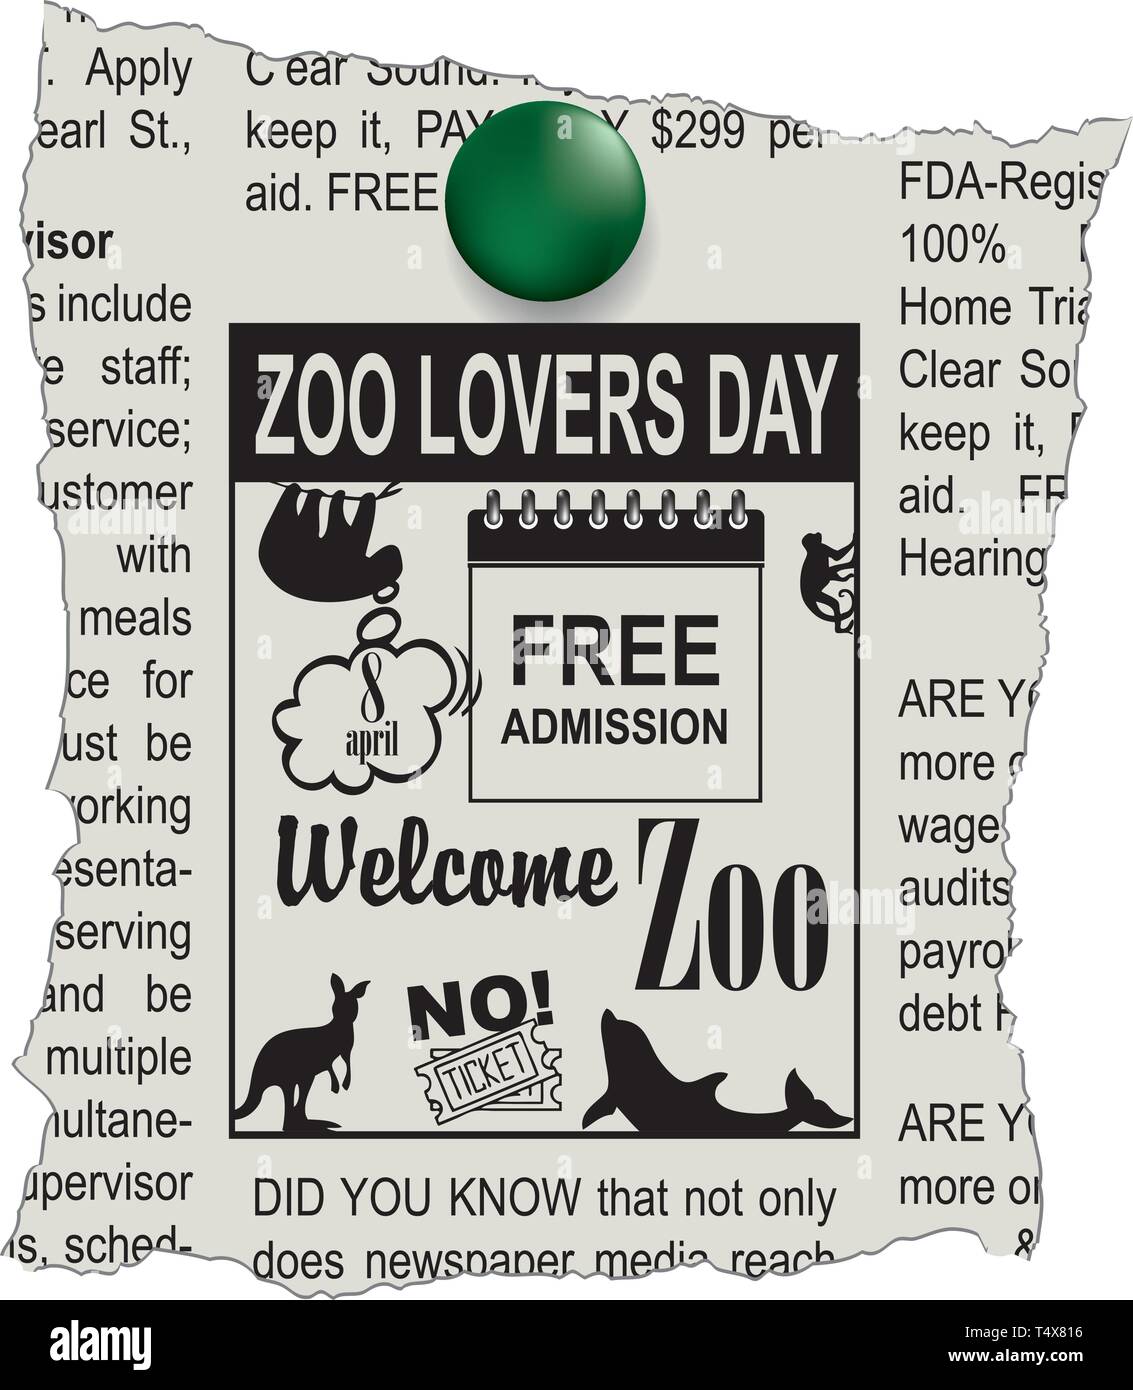 Anzeige in der Zeitung Willkommen im Zoo. Eintritt frei - Zoo Liebhaber Tag Stock Vektor